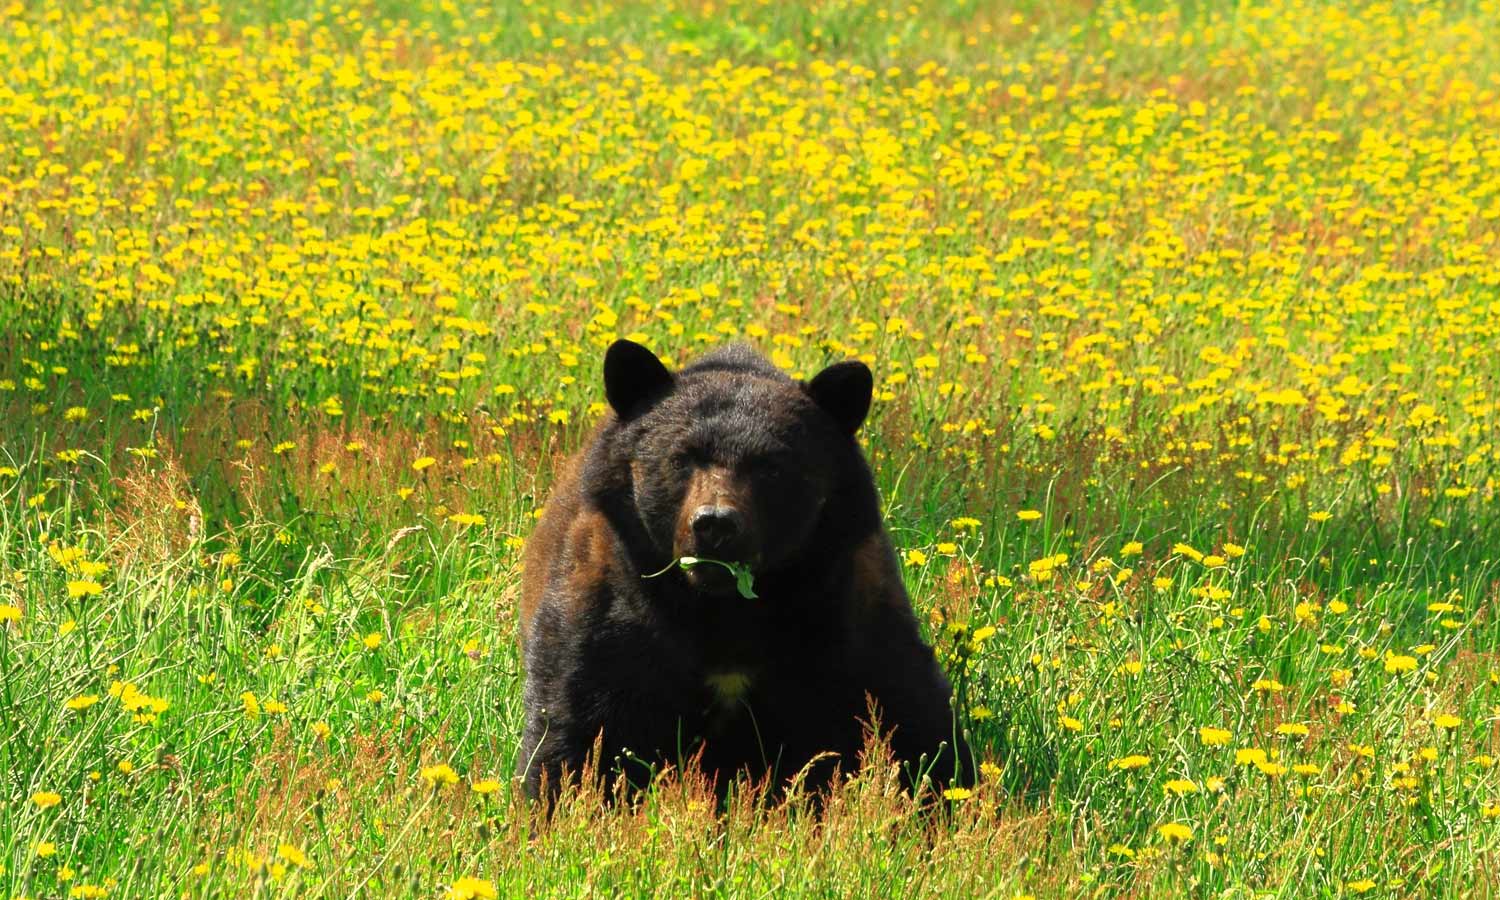 Black Bear in Meadow